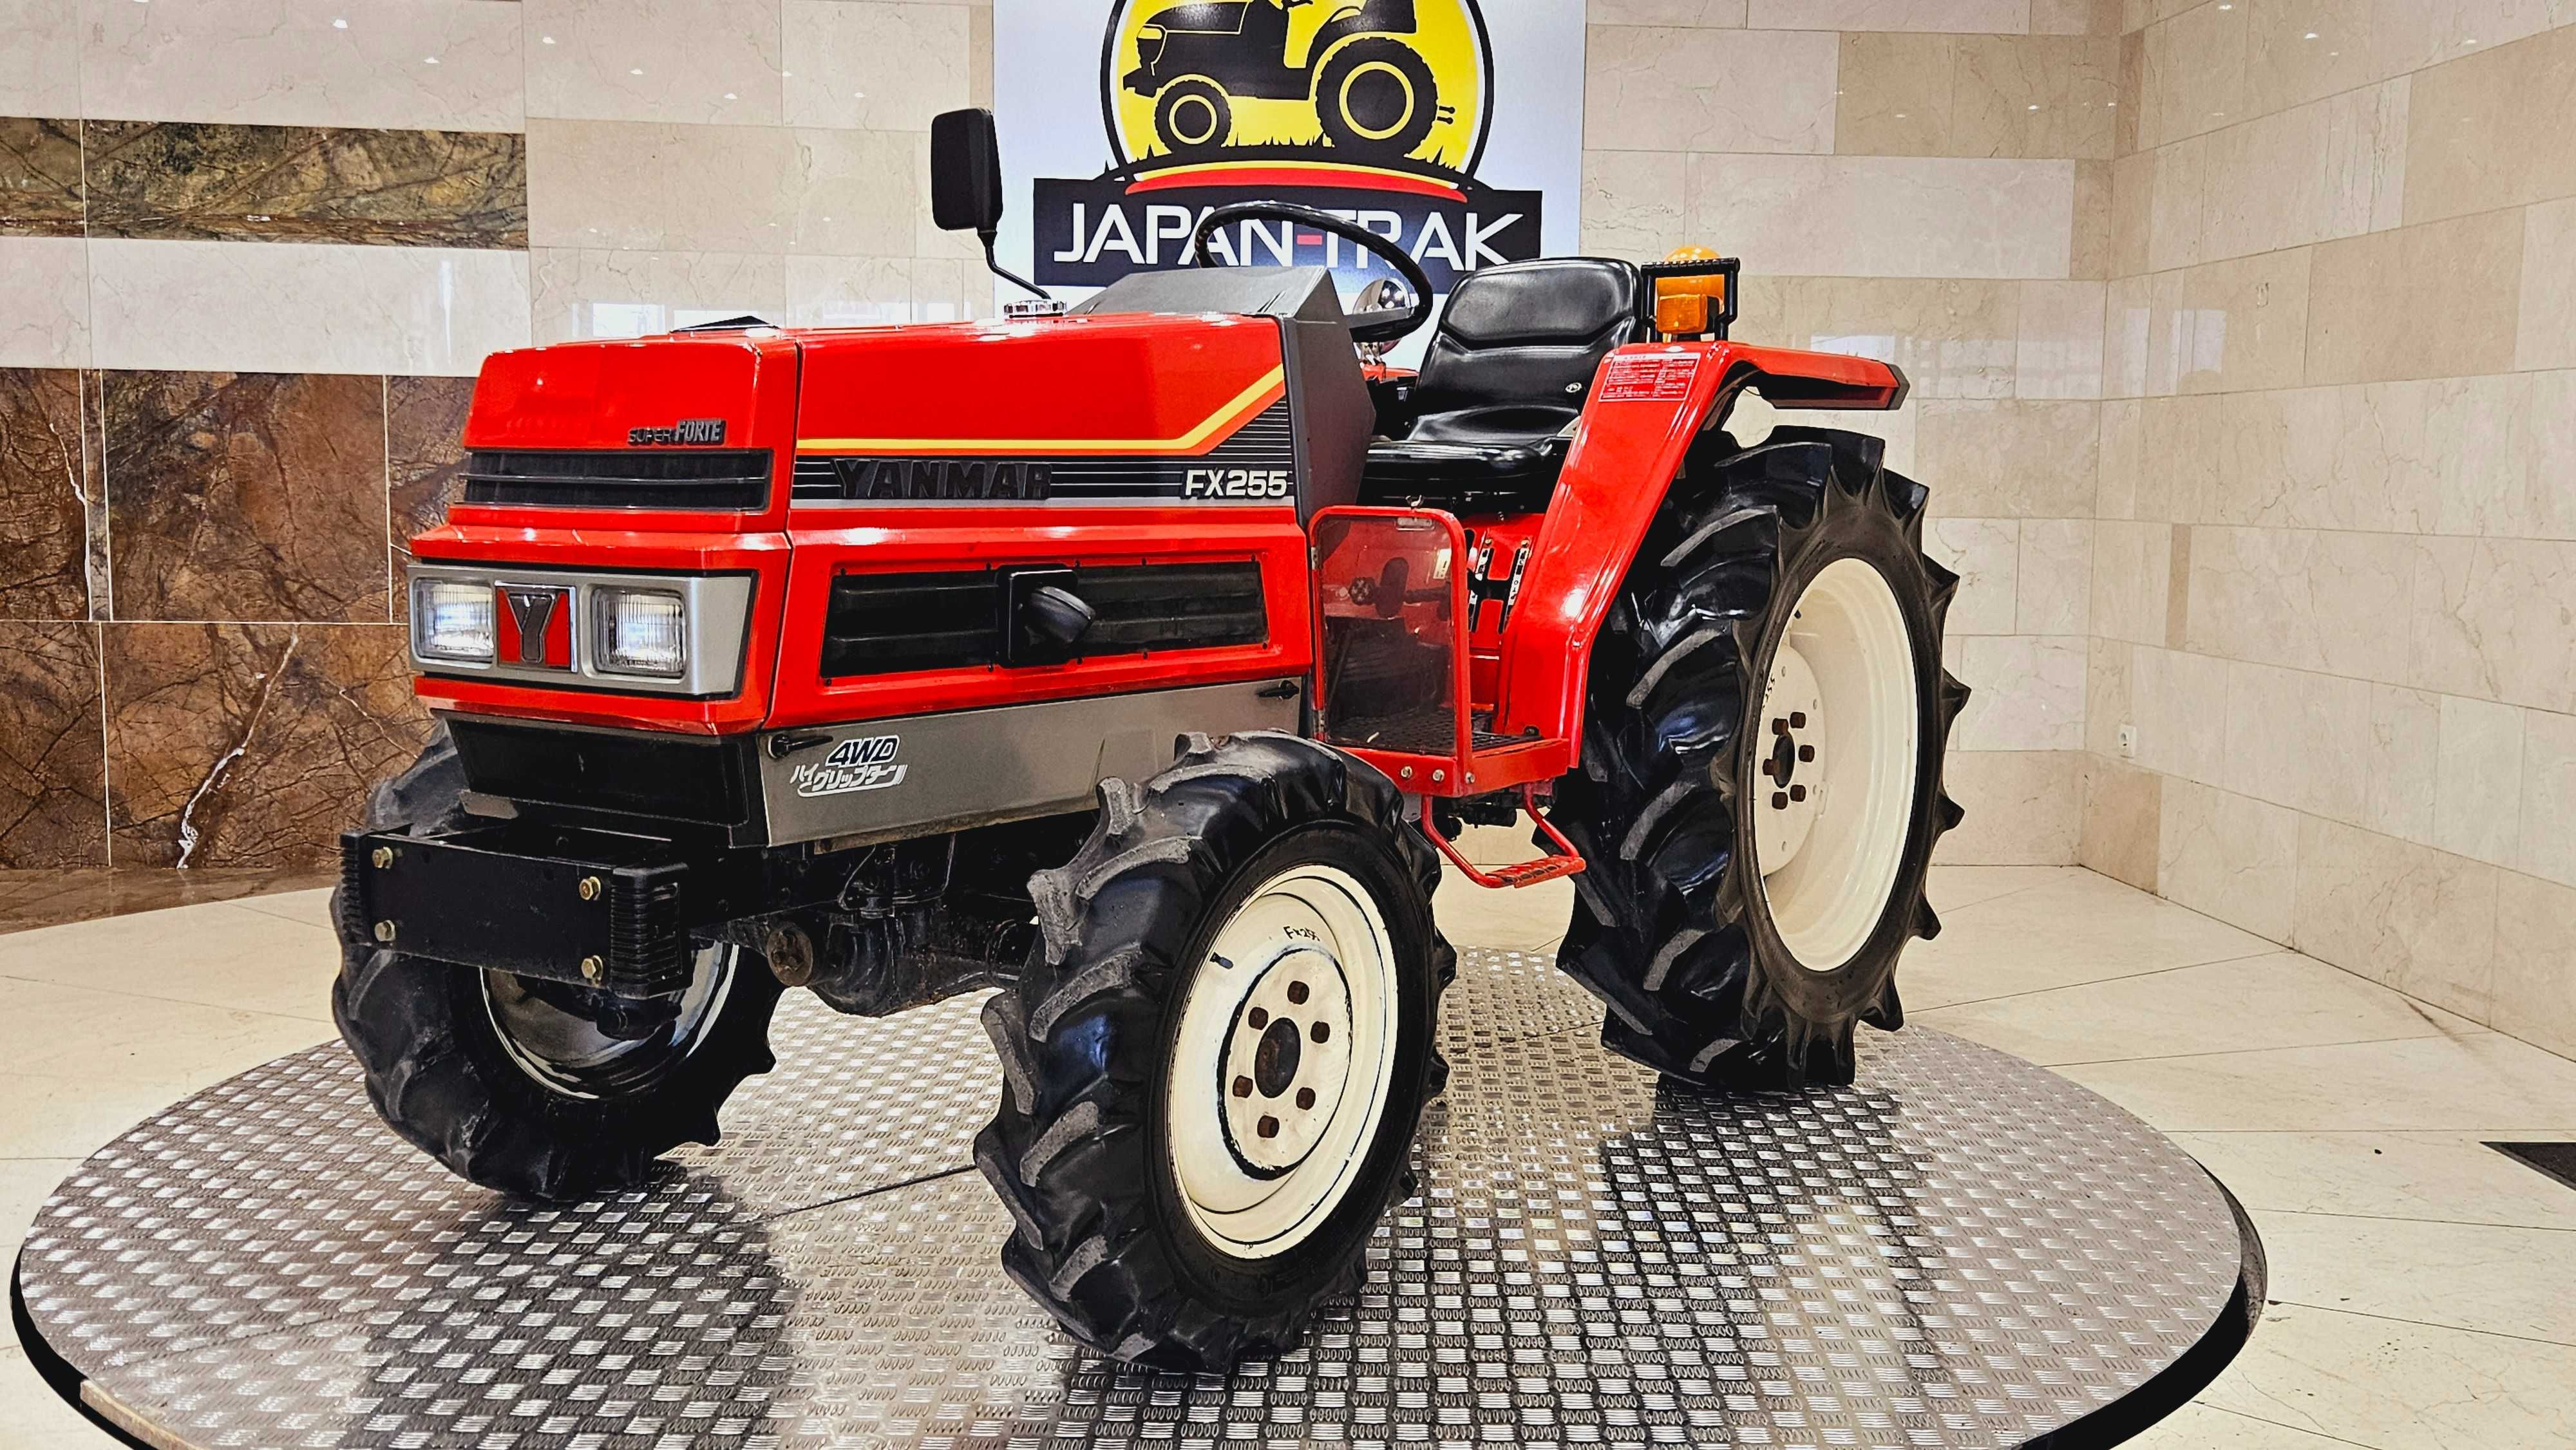 Yanmar FX 255 4x4 Raty traktorek ogrodowy sadu. JAPAN TRAK